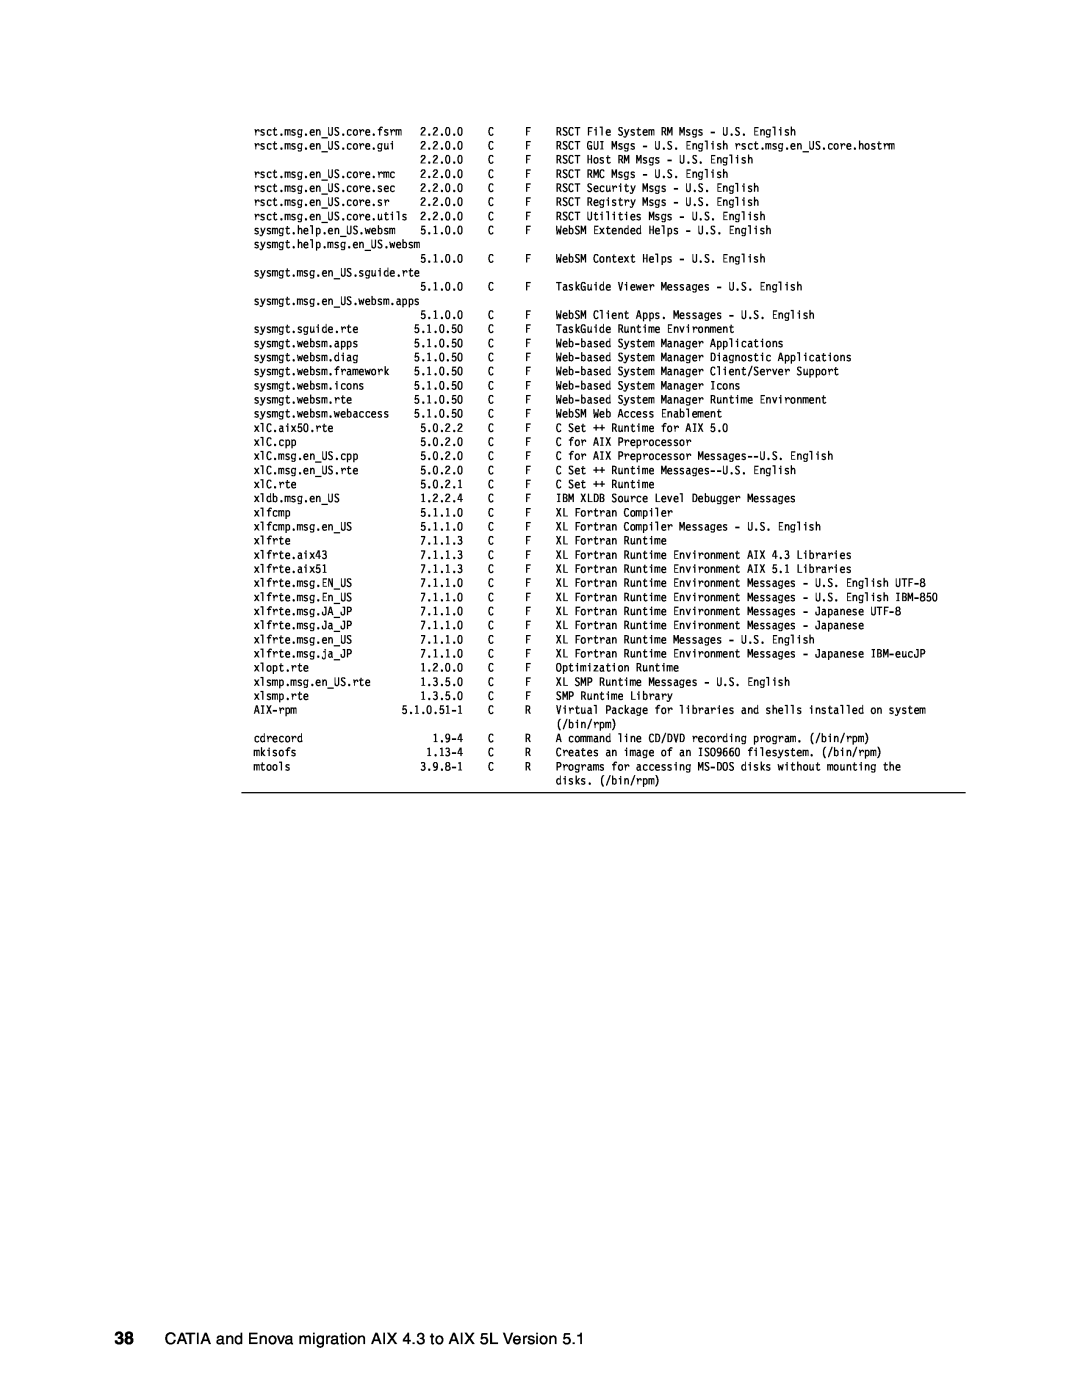 IBM AIX5L, AIX 4.3 manual rsct.msg.en US.core.fsrm 